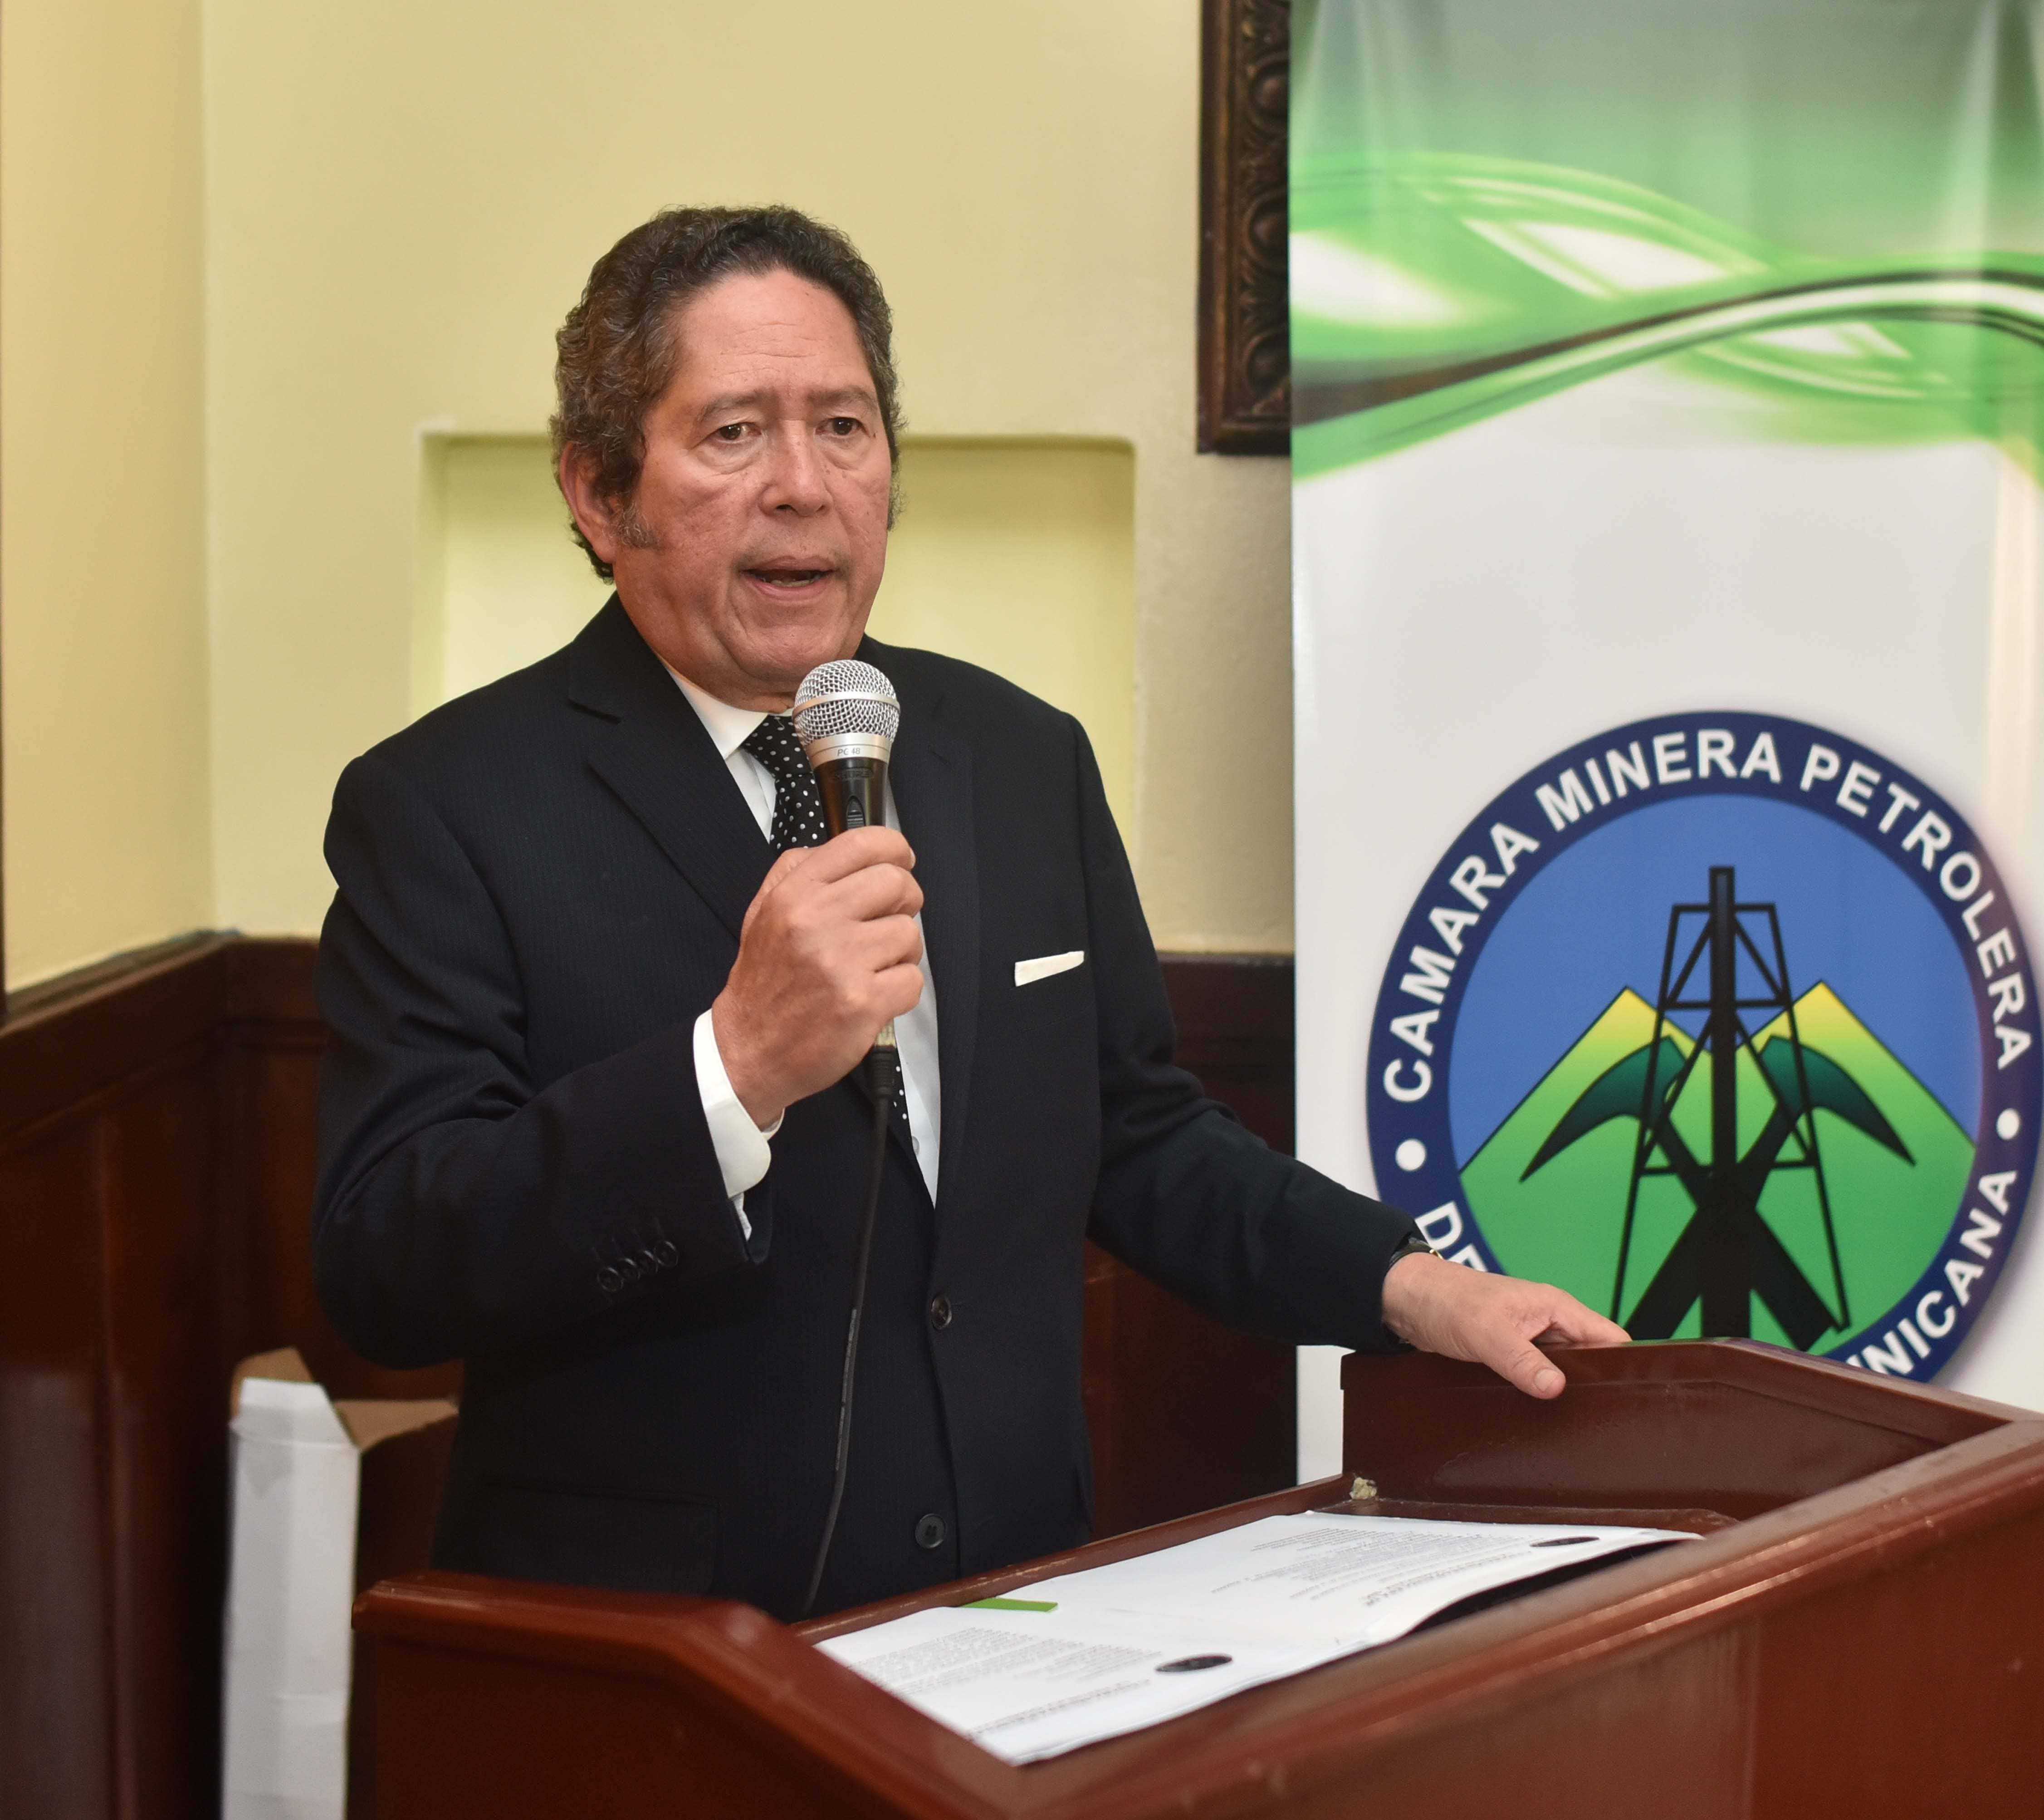 Consultores internacionales participarán en el seminario “El futuro de la minería en la República Dominicana”